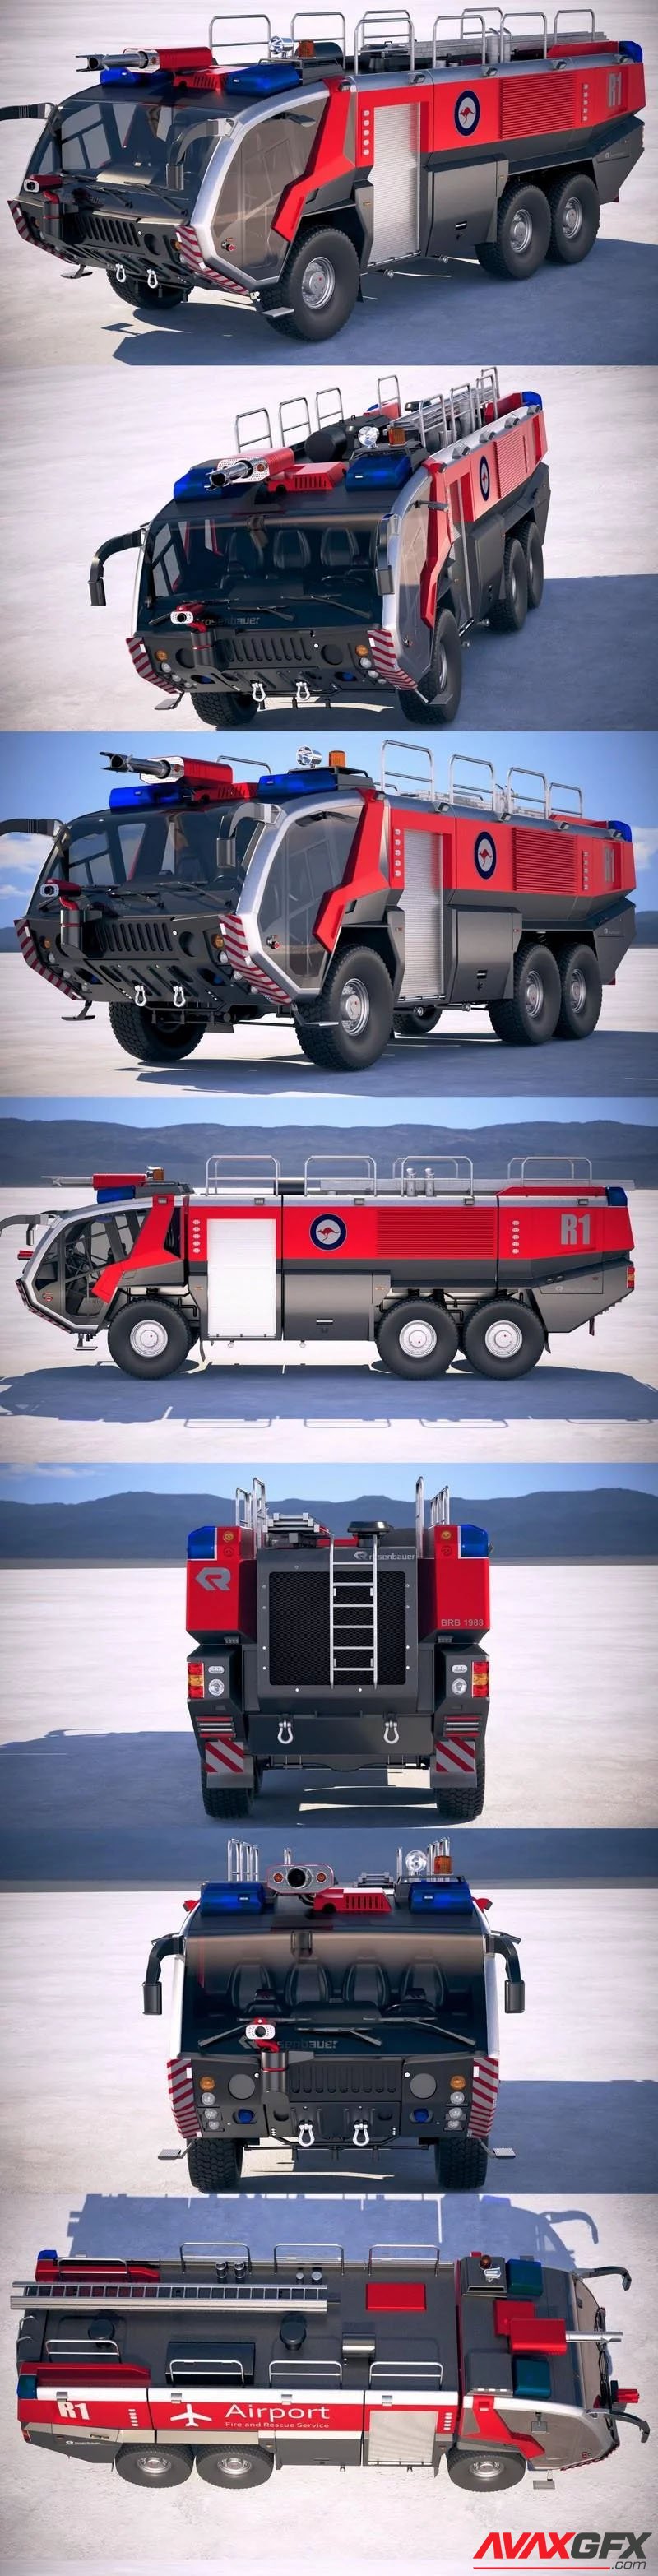 Rosenbauer Panther Fire Truck 6×6 3D Model